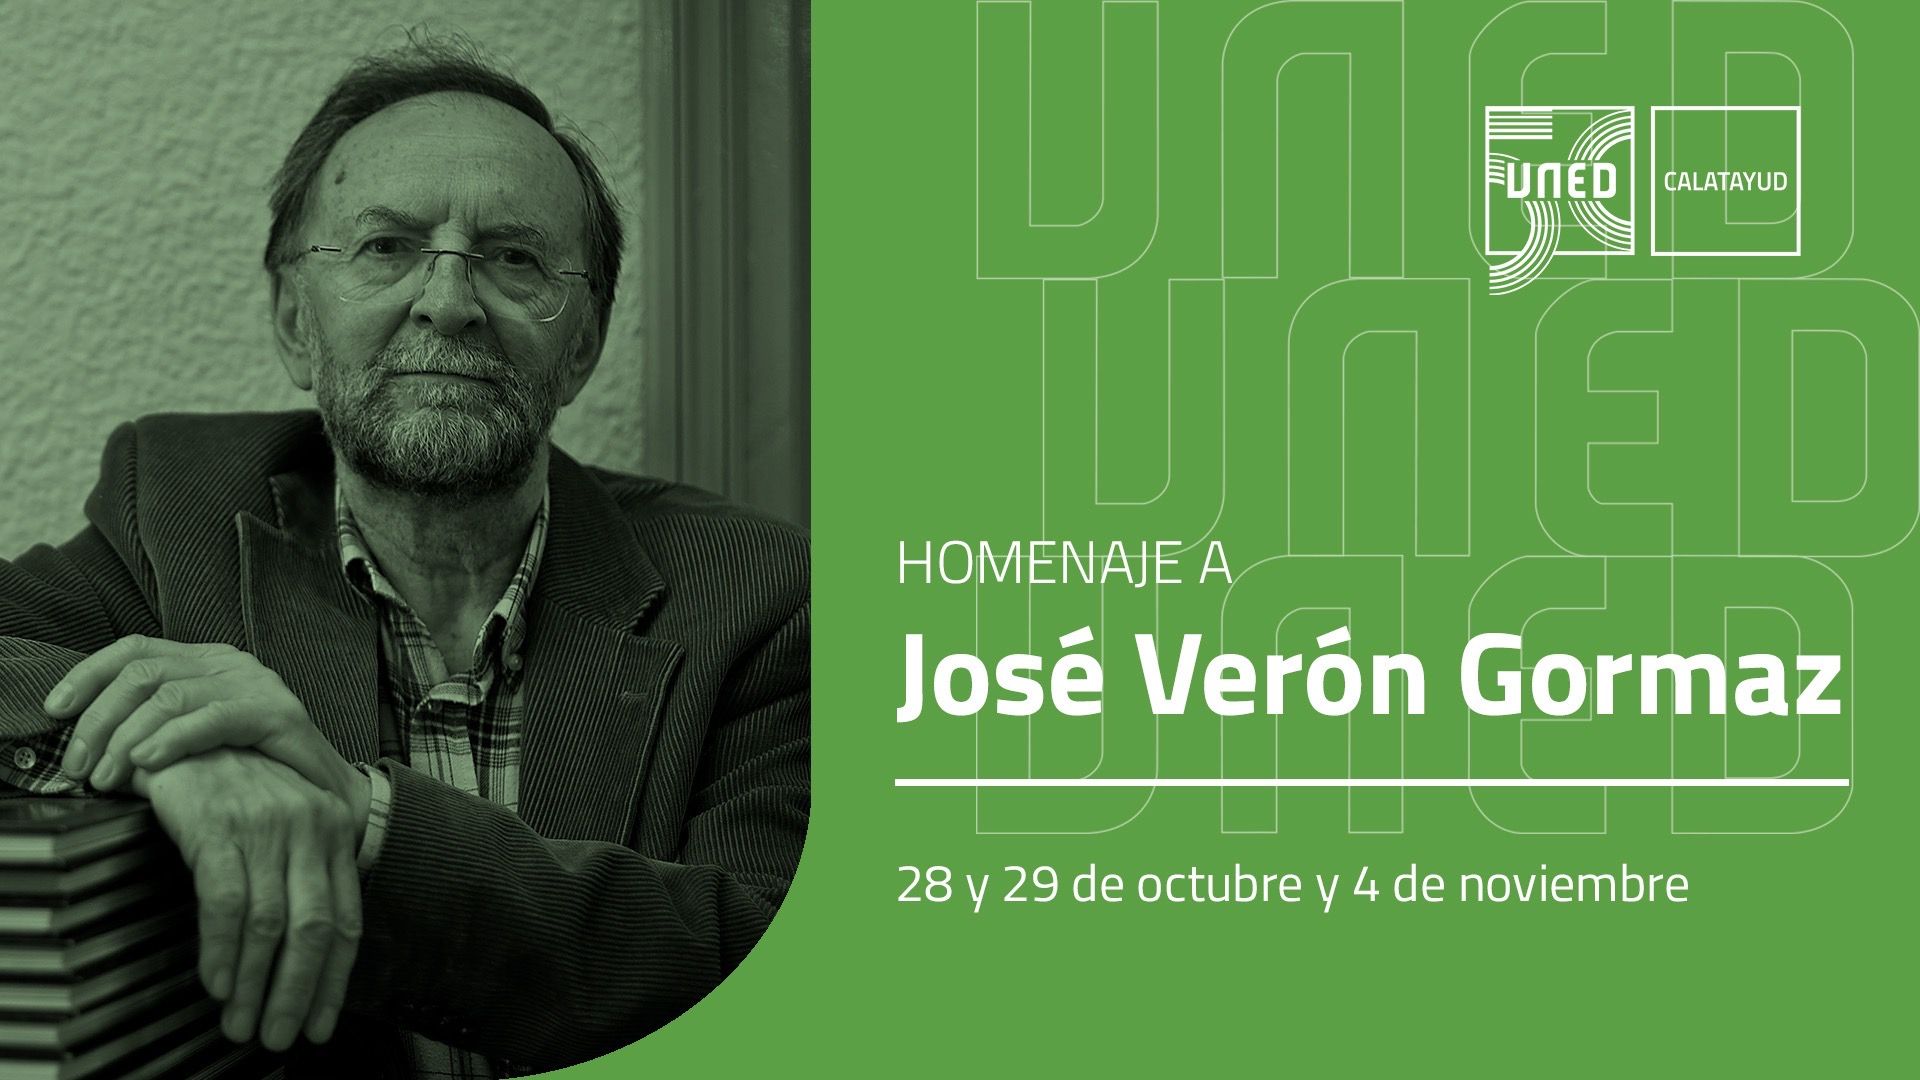 Entrevista en La Almunia Radio: homenaje a José Verón